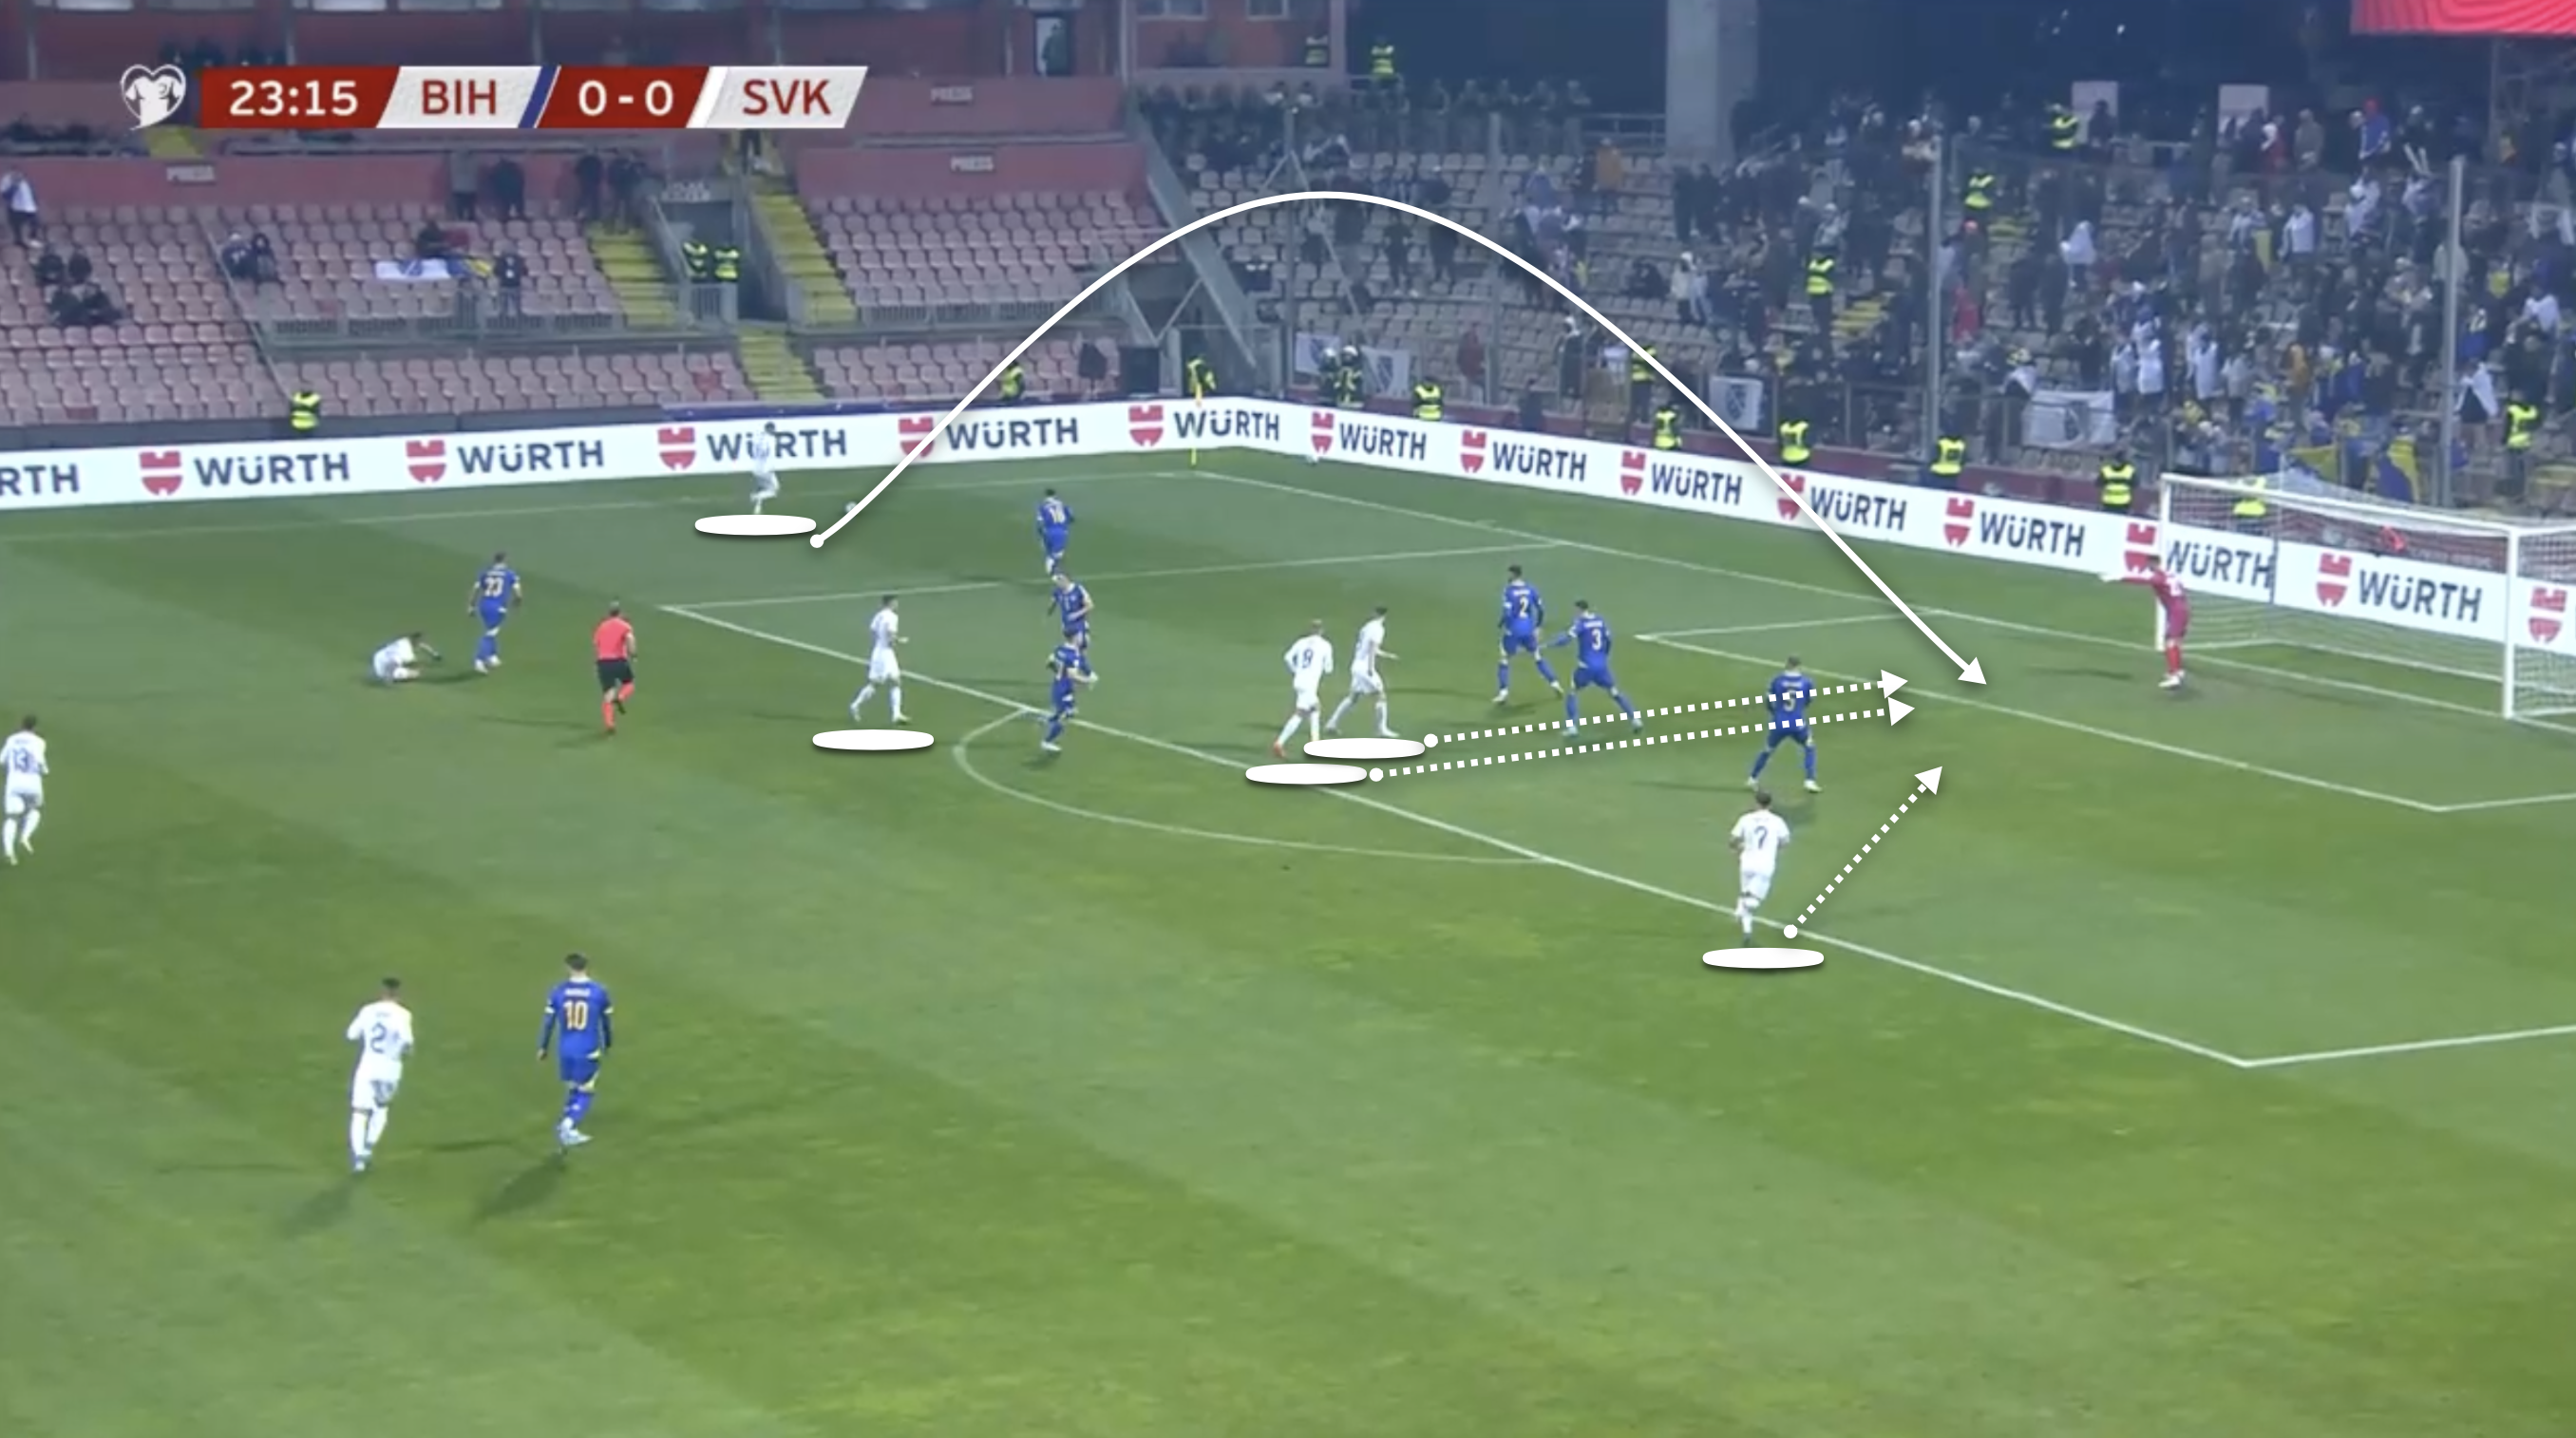 Con el balón en el área amplia, Eslovaquia presiona a sus jugadores hacia arriba mientras busca aprovechar el balón cruzado hacia el área penal.